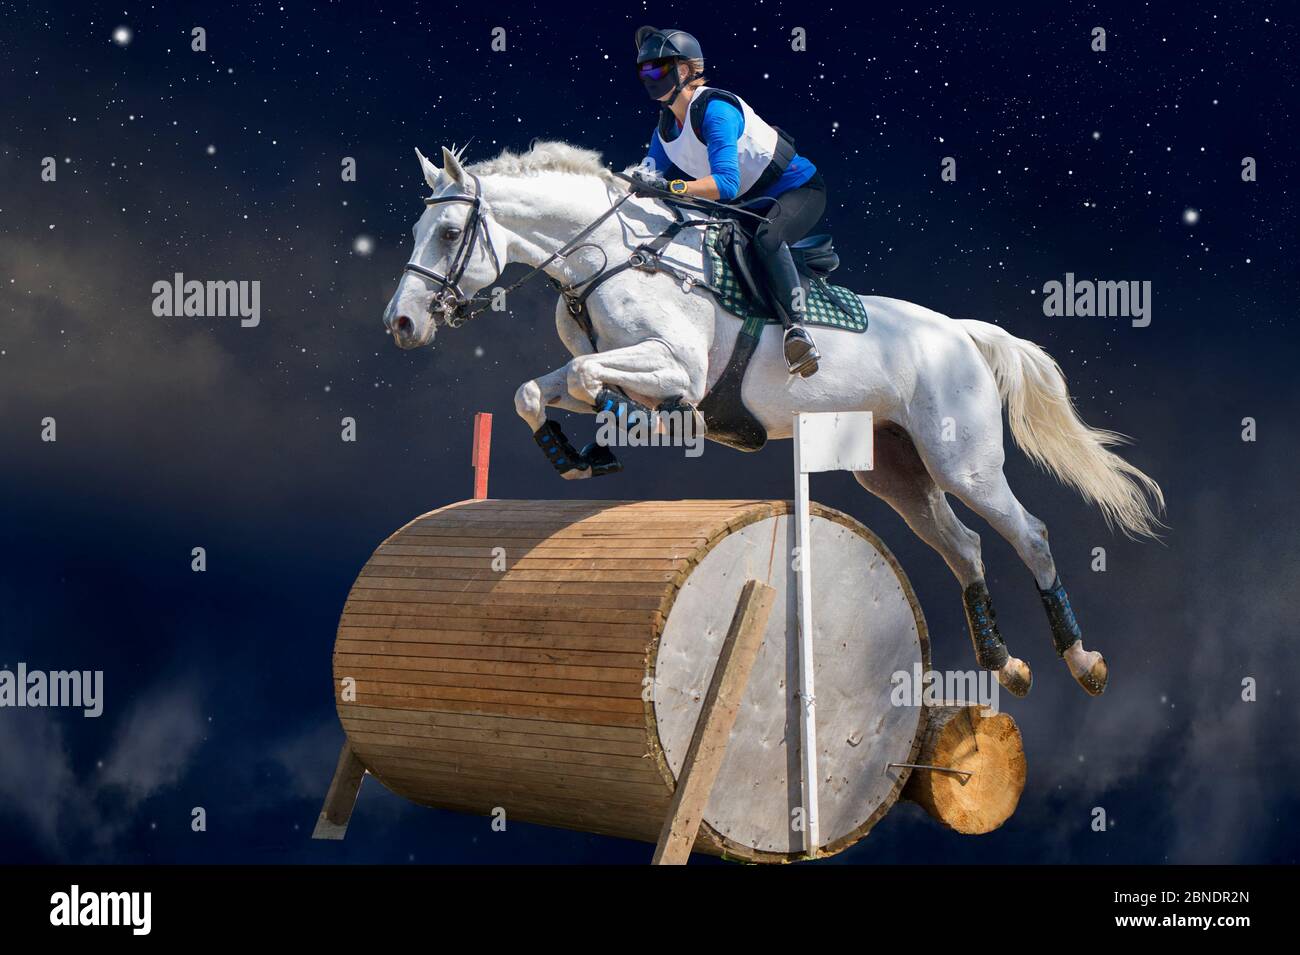 Jockey Com Seu Cavalo Pulando Sobre Um Obstáculo Pulando Sobre O Obstáculo  Na Competição Foto de Stock - Imagem de movimento, equestre: 194863184